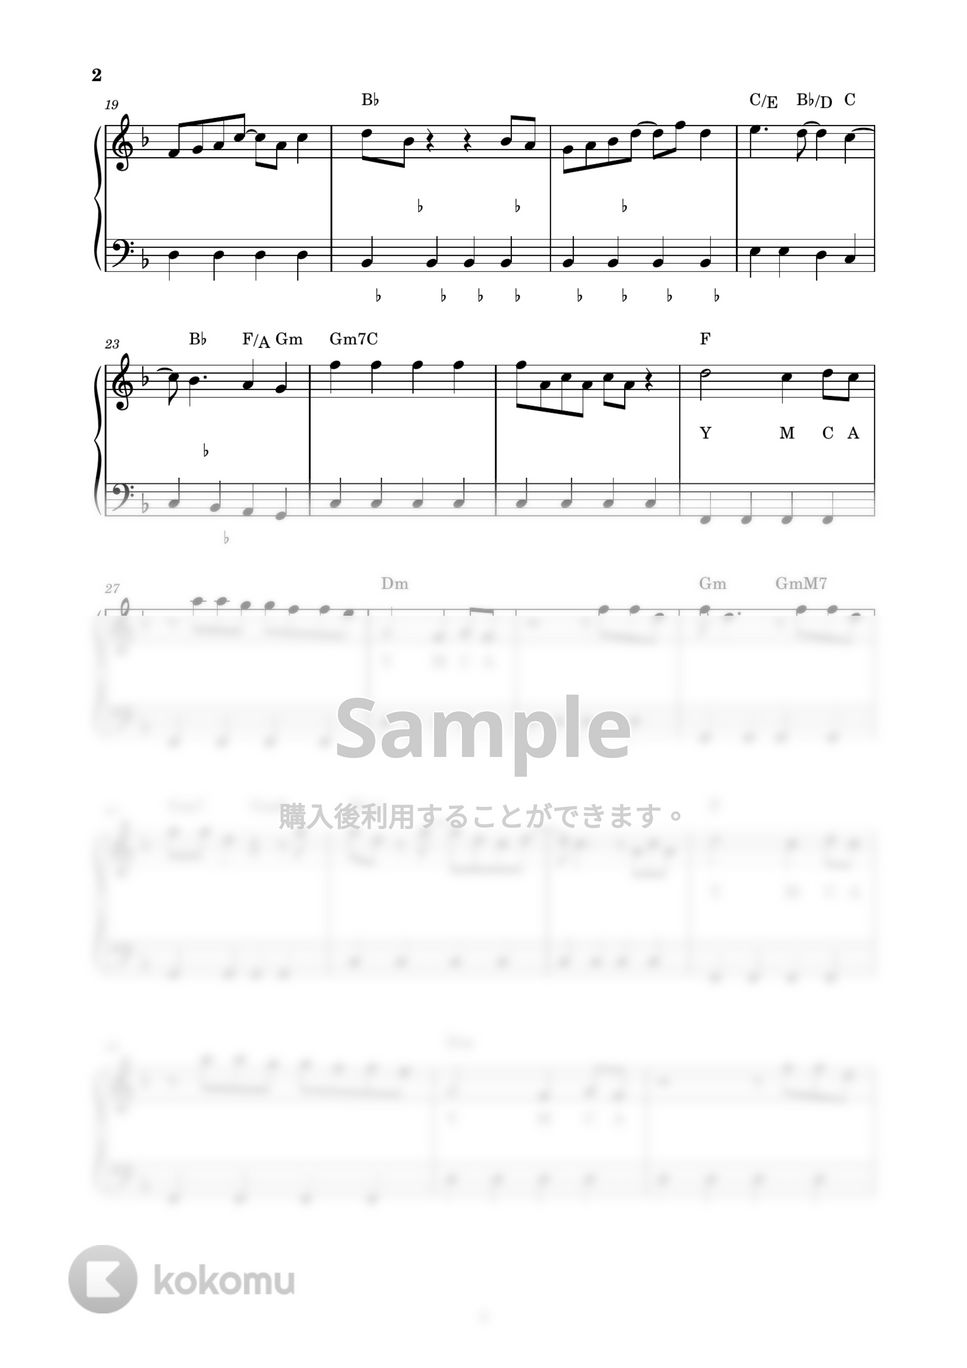 西城秀樹 - YOUNG MAN (Y.M.C.A) (ピアノ楽譜 / かんたん両手 / 歌詞付き / ドレミ付き / 初心者向き) by piano.tokyo